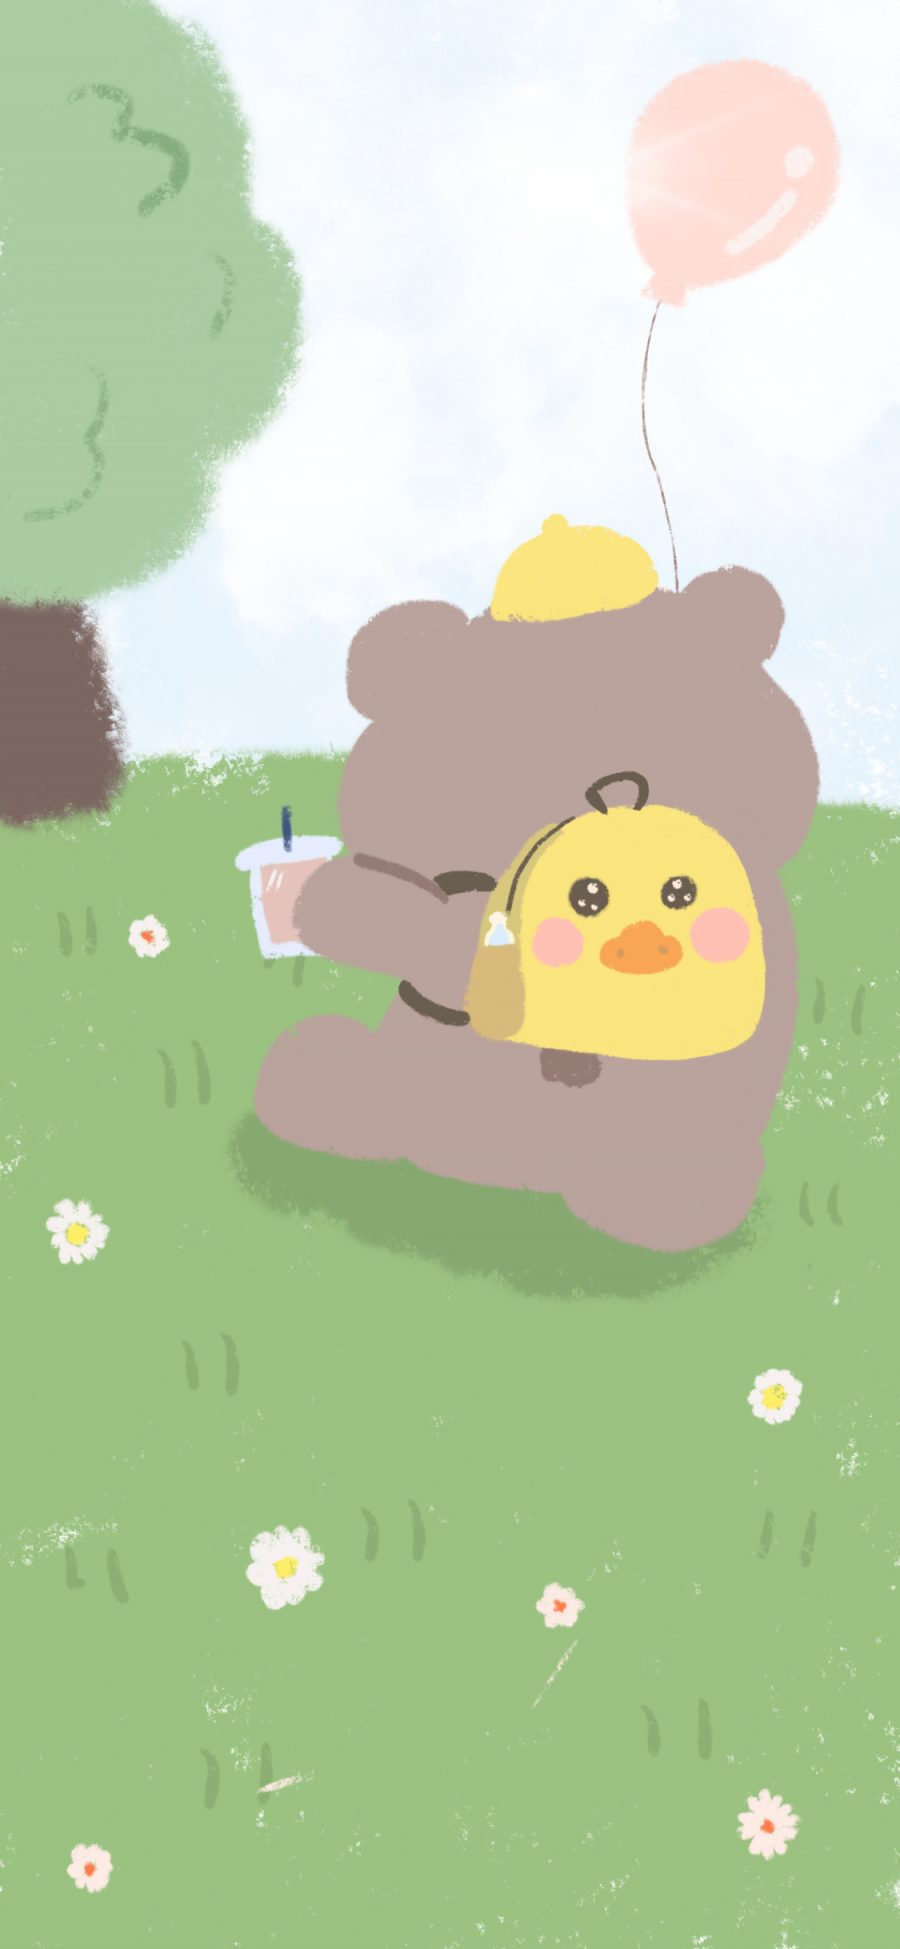 [2436×1125]插图 草地 小熊 背影 可爱 苹果手机动漫壁纸图片